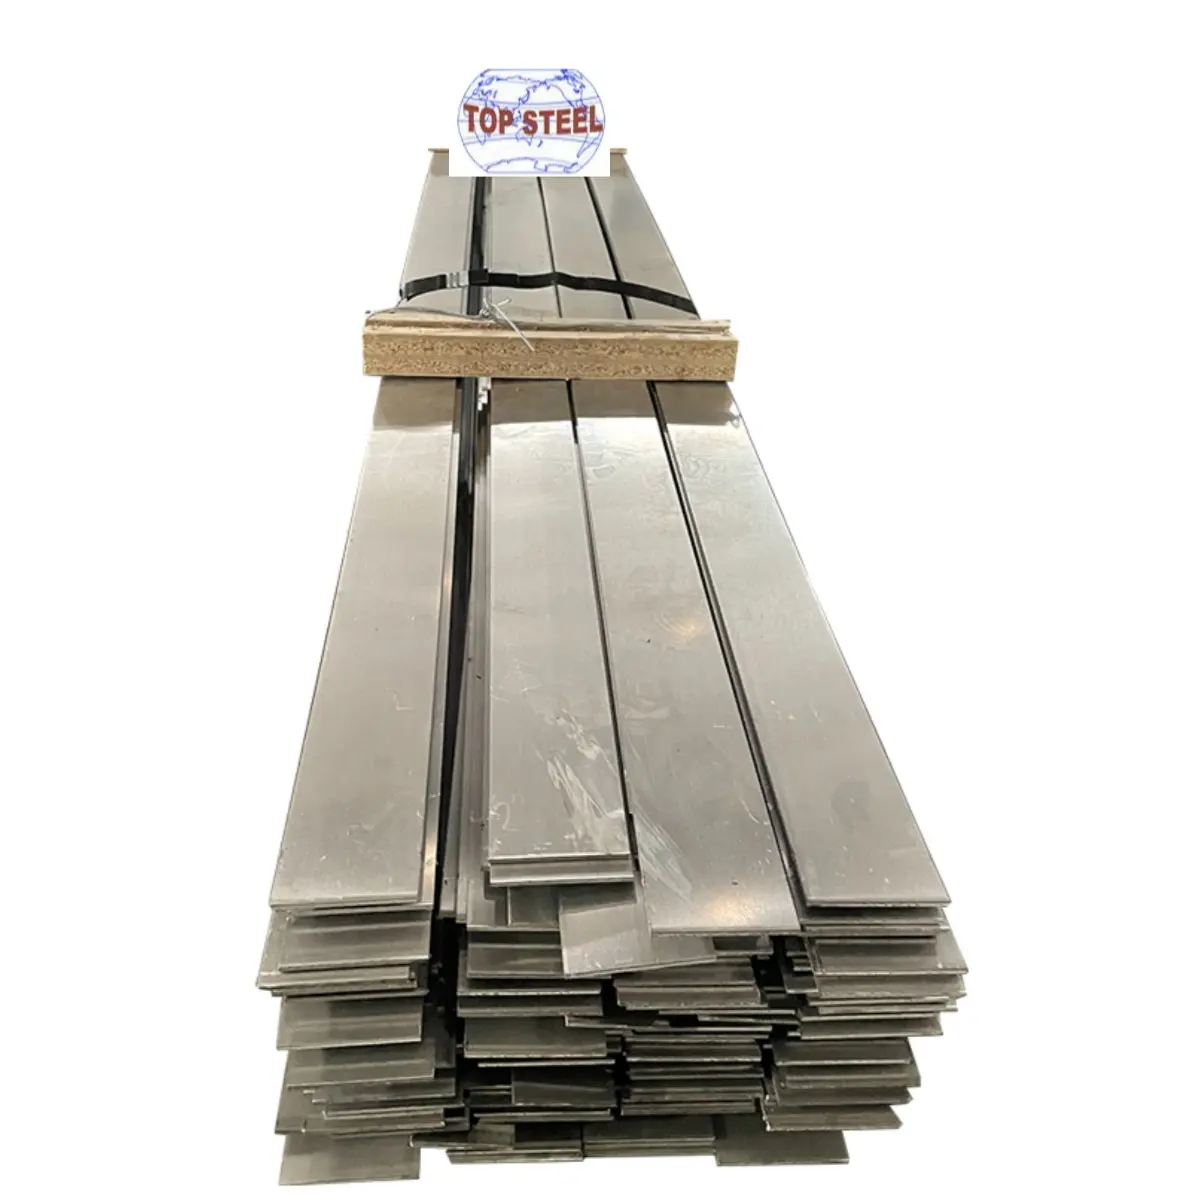 Barra plana de aço inoxidável laminada a alta temperatura ASTM 304 SUS 304 304L, preço por kg, de boa qualidade e melhor preço